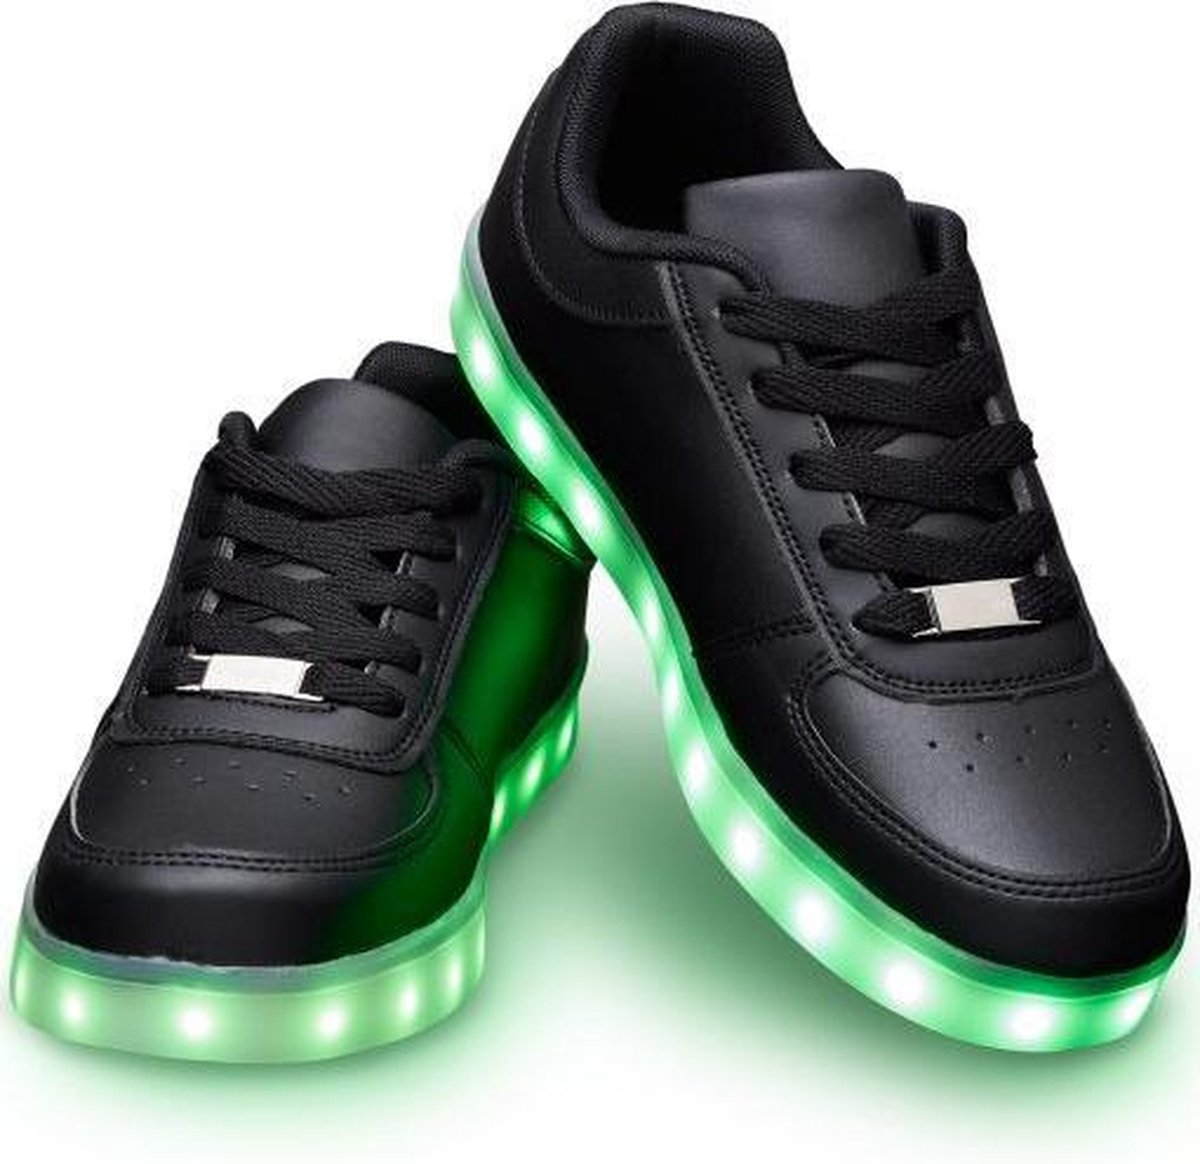 Schoenen met lichtjes - Lichtgevende led schoenen - Zwart - Maat 46